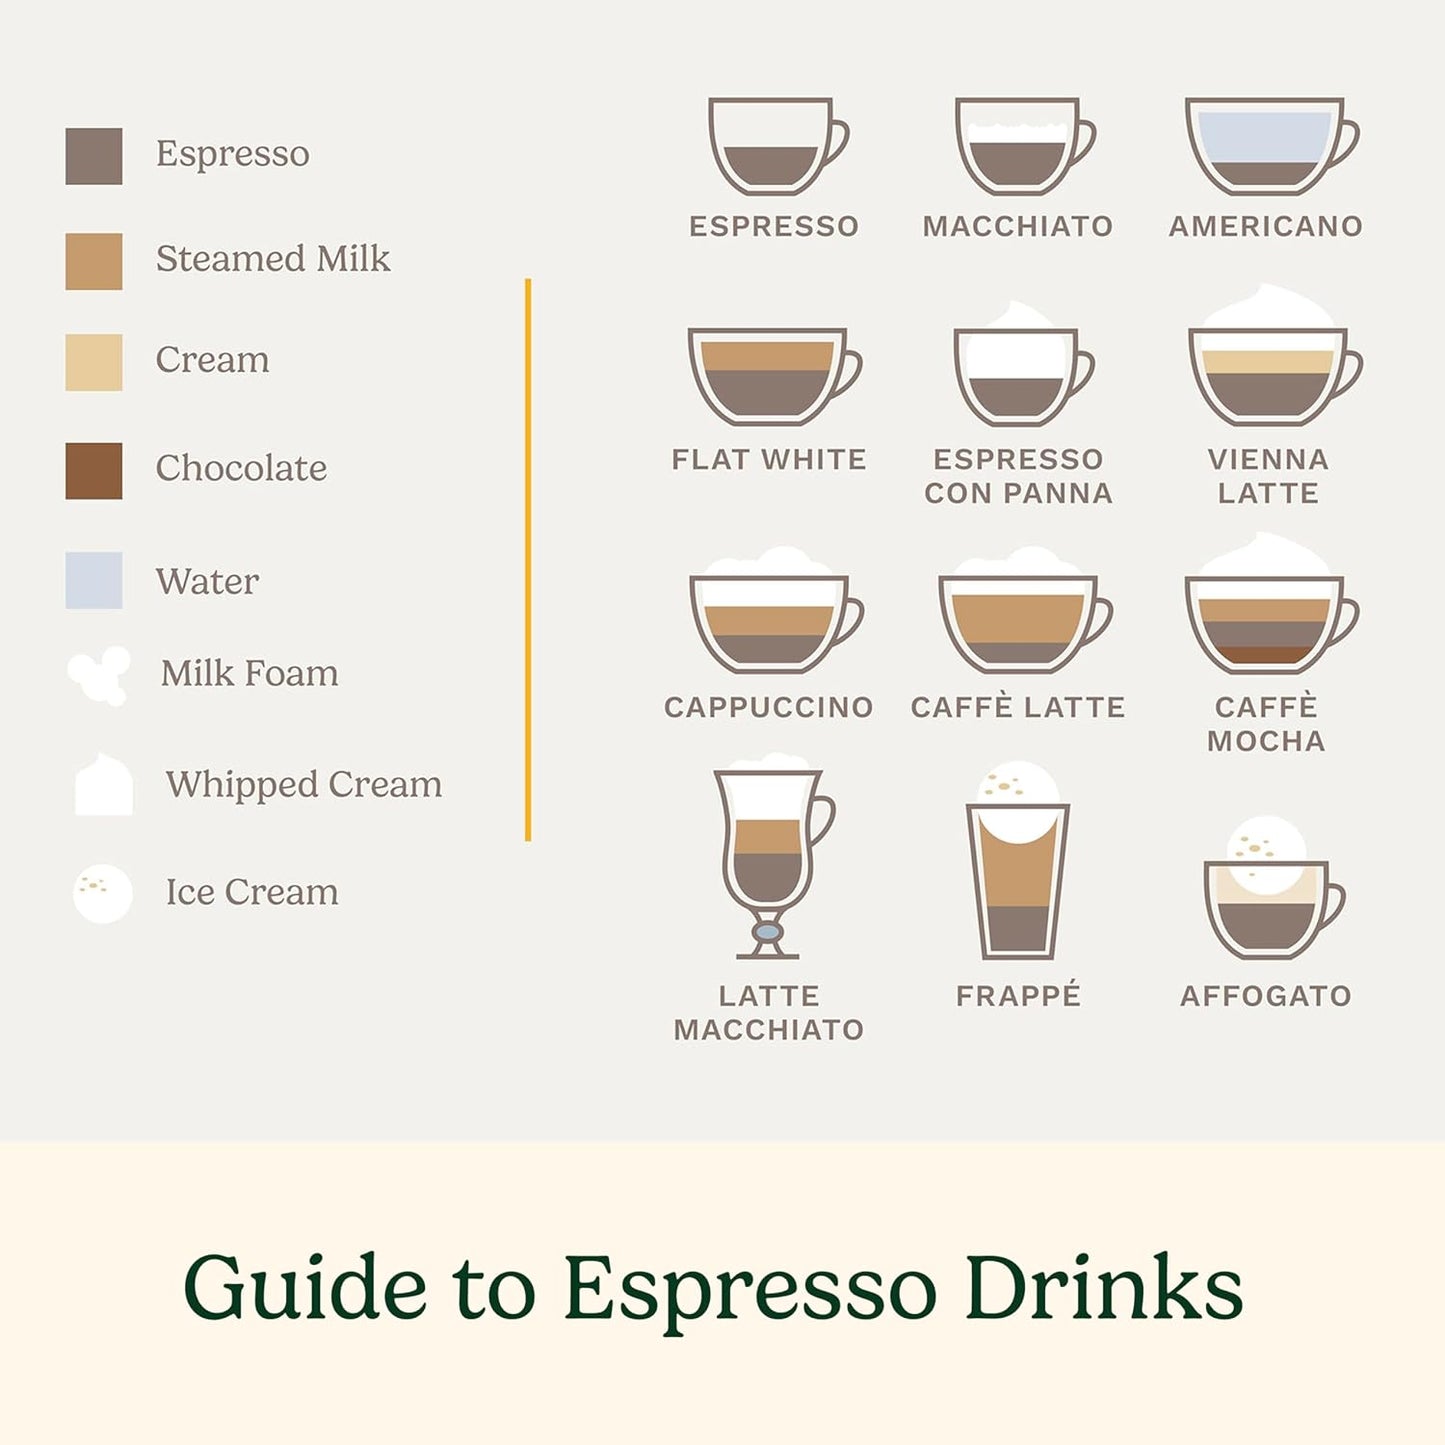 Cuisinart Coffee Maker Barista System, Coffee Center 4-In-1 Coffee Machine, Espresso & Nespresso Capsule 12-Cup Carafe